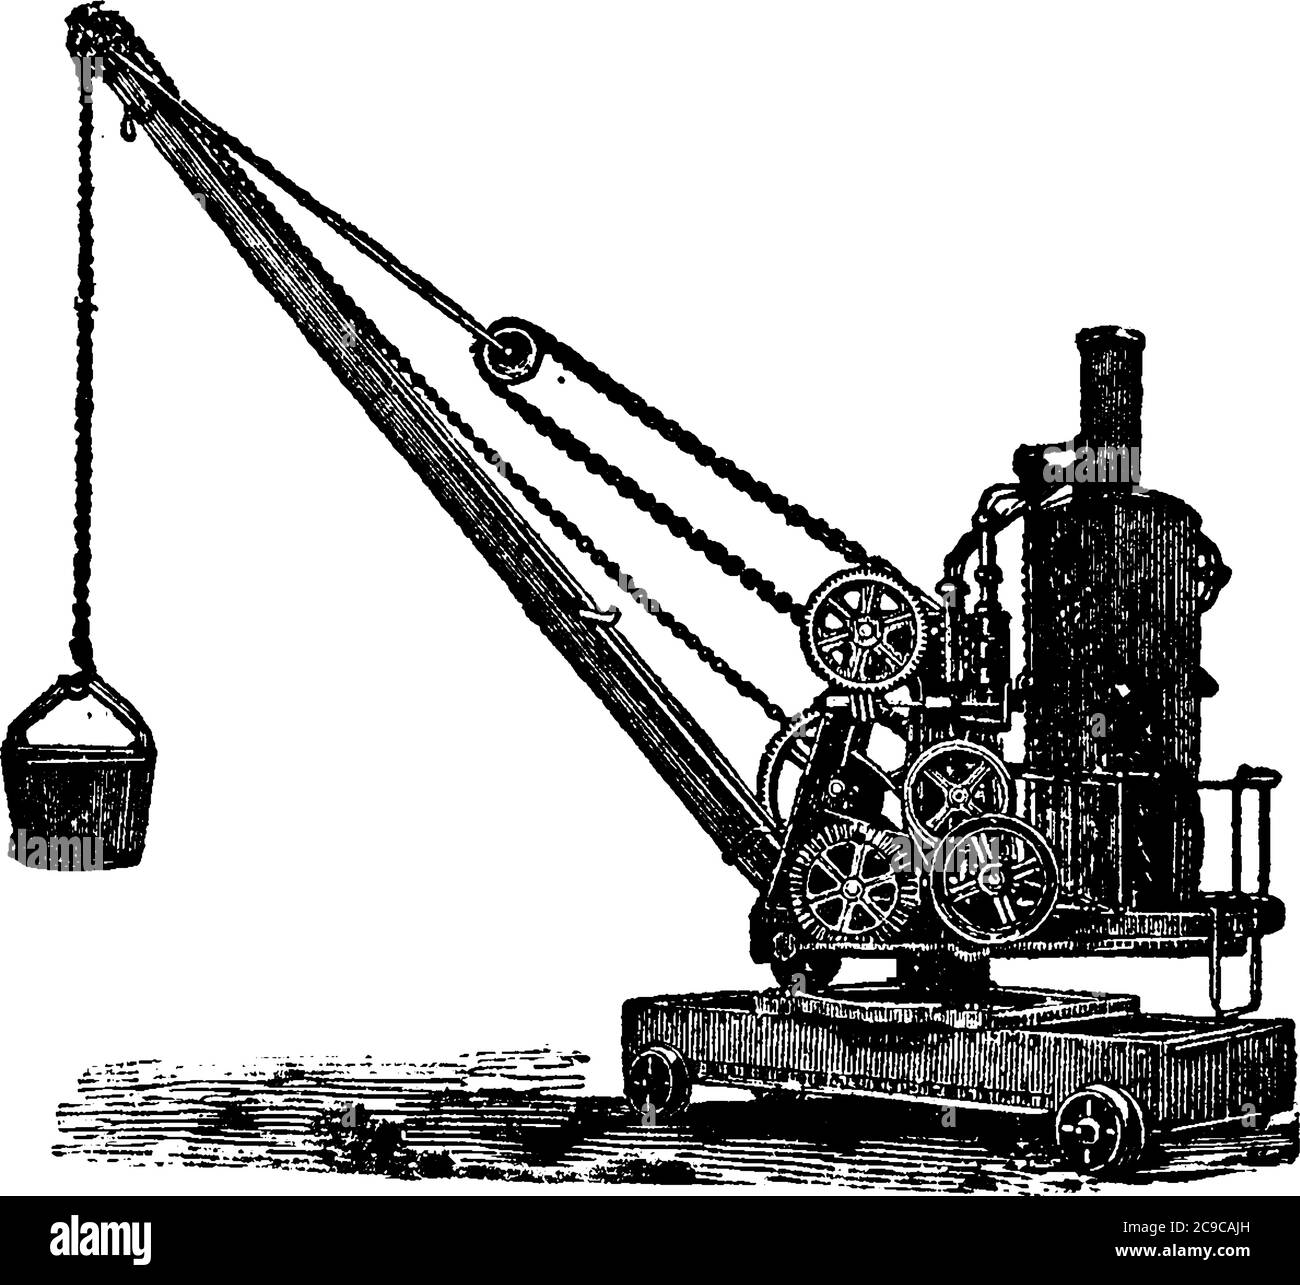 Eine Maschine, die zum Heben von Gewichten verwendet wird und auf drei verschiedene Arten arbeitet: Hand, Dampf und Hydraulikkraft. Besteht aus einem aufrechten Drehpfosten und einem Projek Stock Vektor